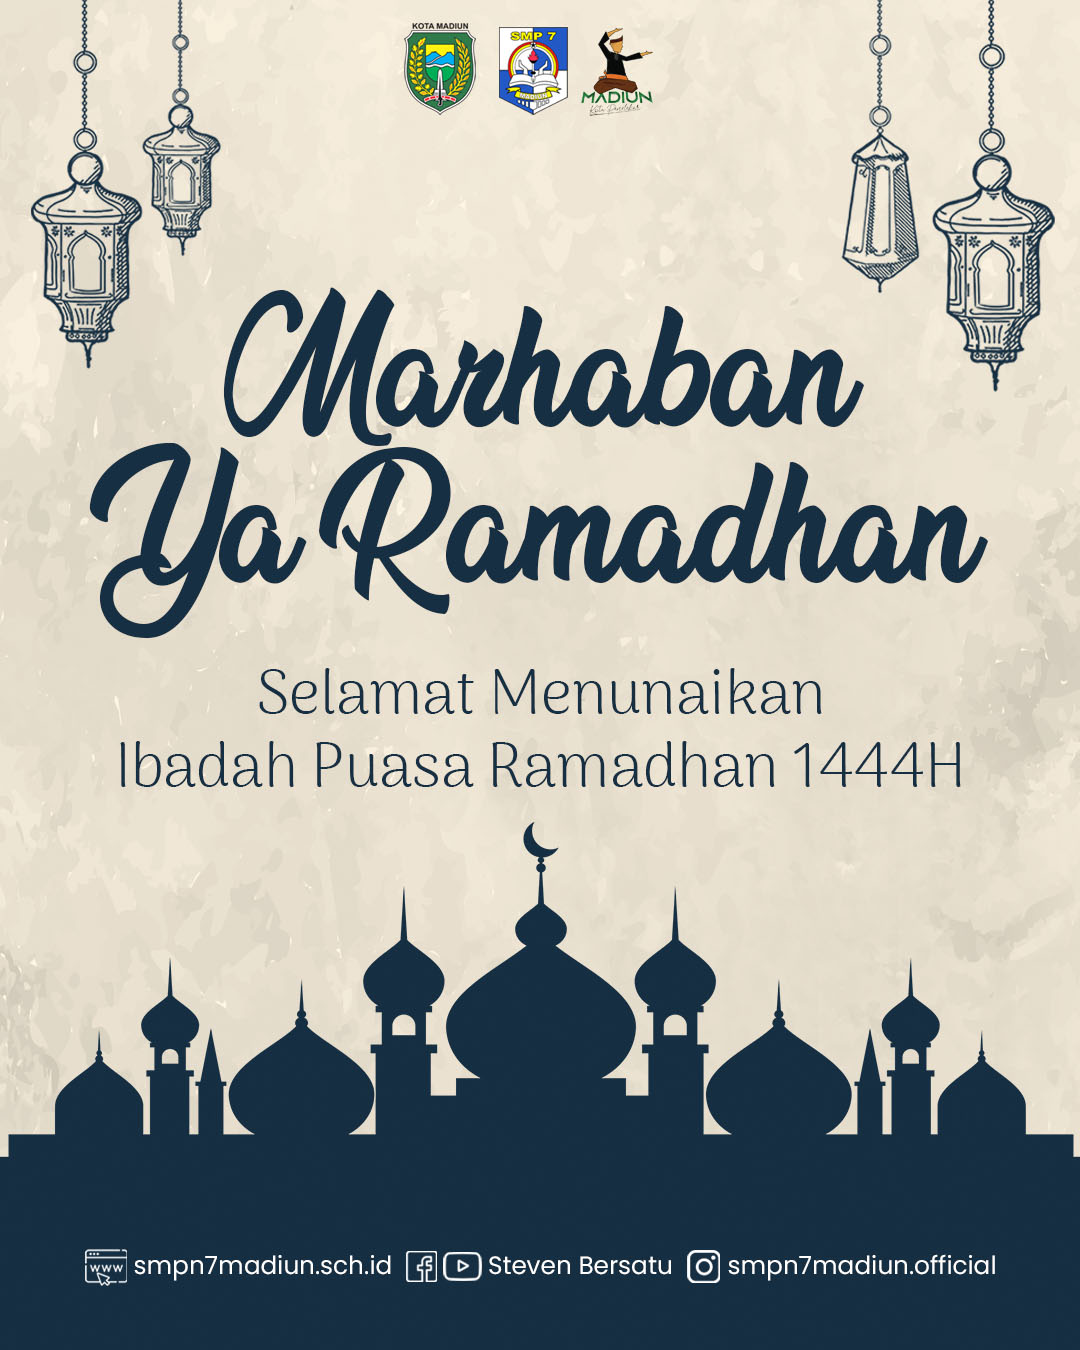 Selamat Menunaikan Ibadah Puasa Ramadhan 1444H/2023M